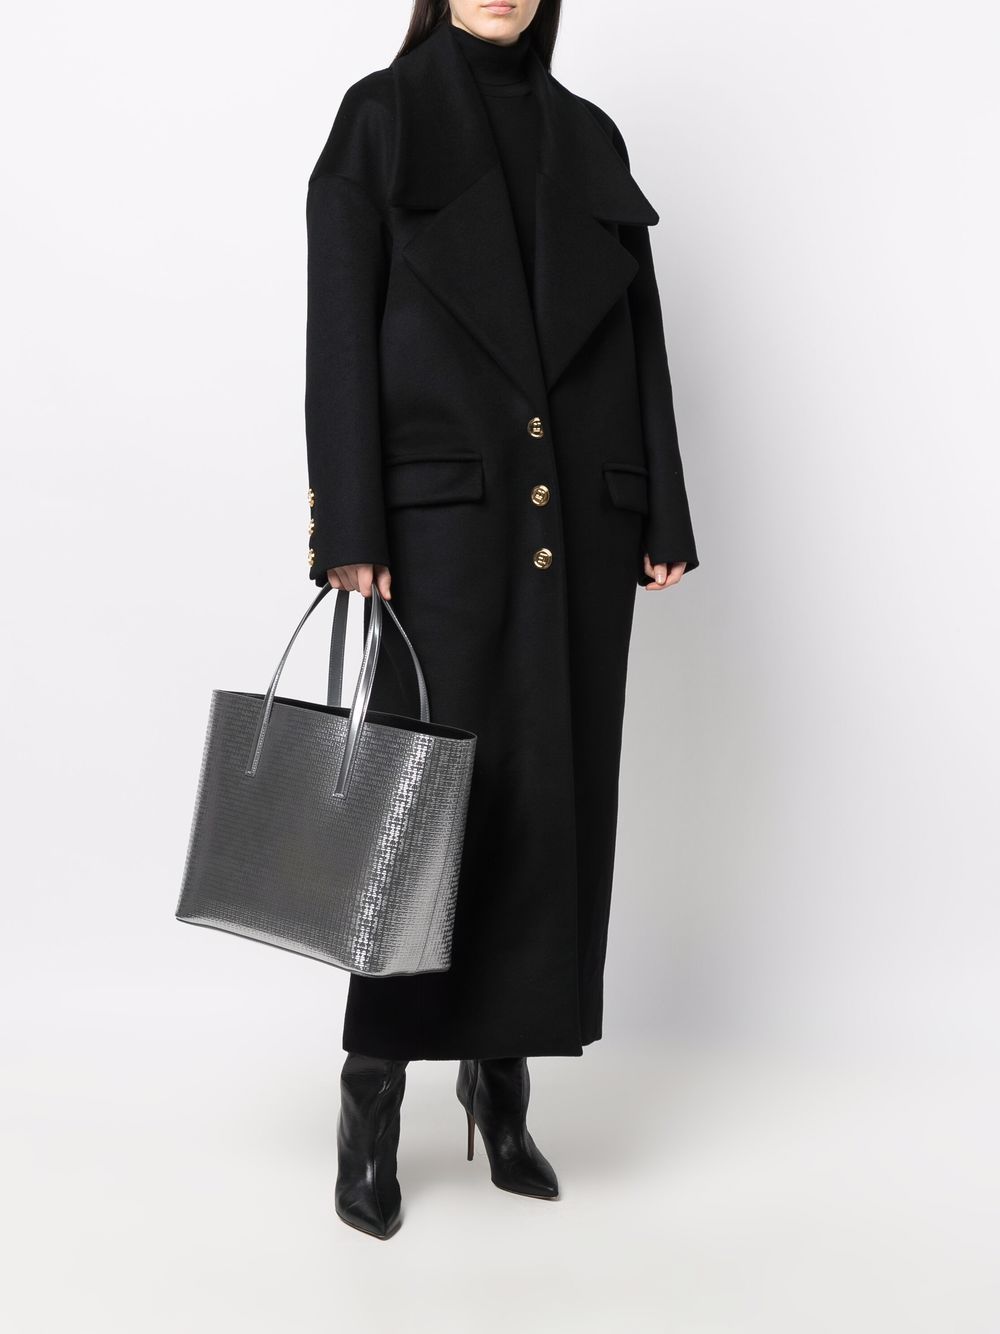 фото Givenchy сумка-тоут с тиснением 4g